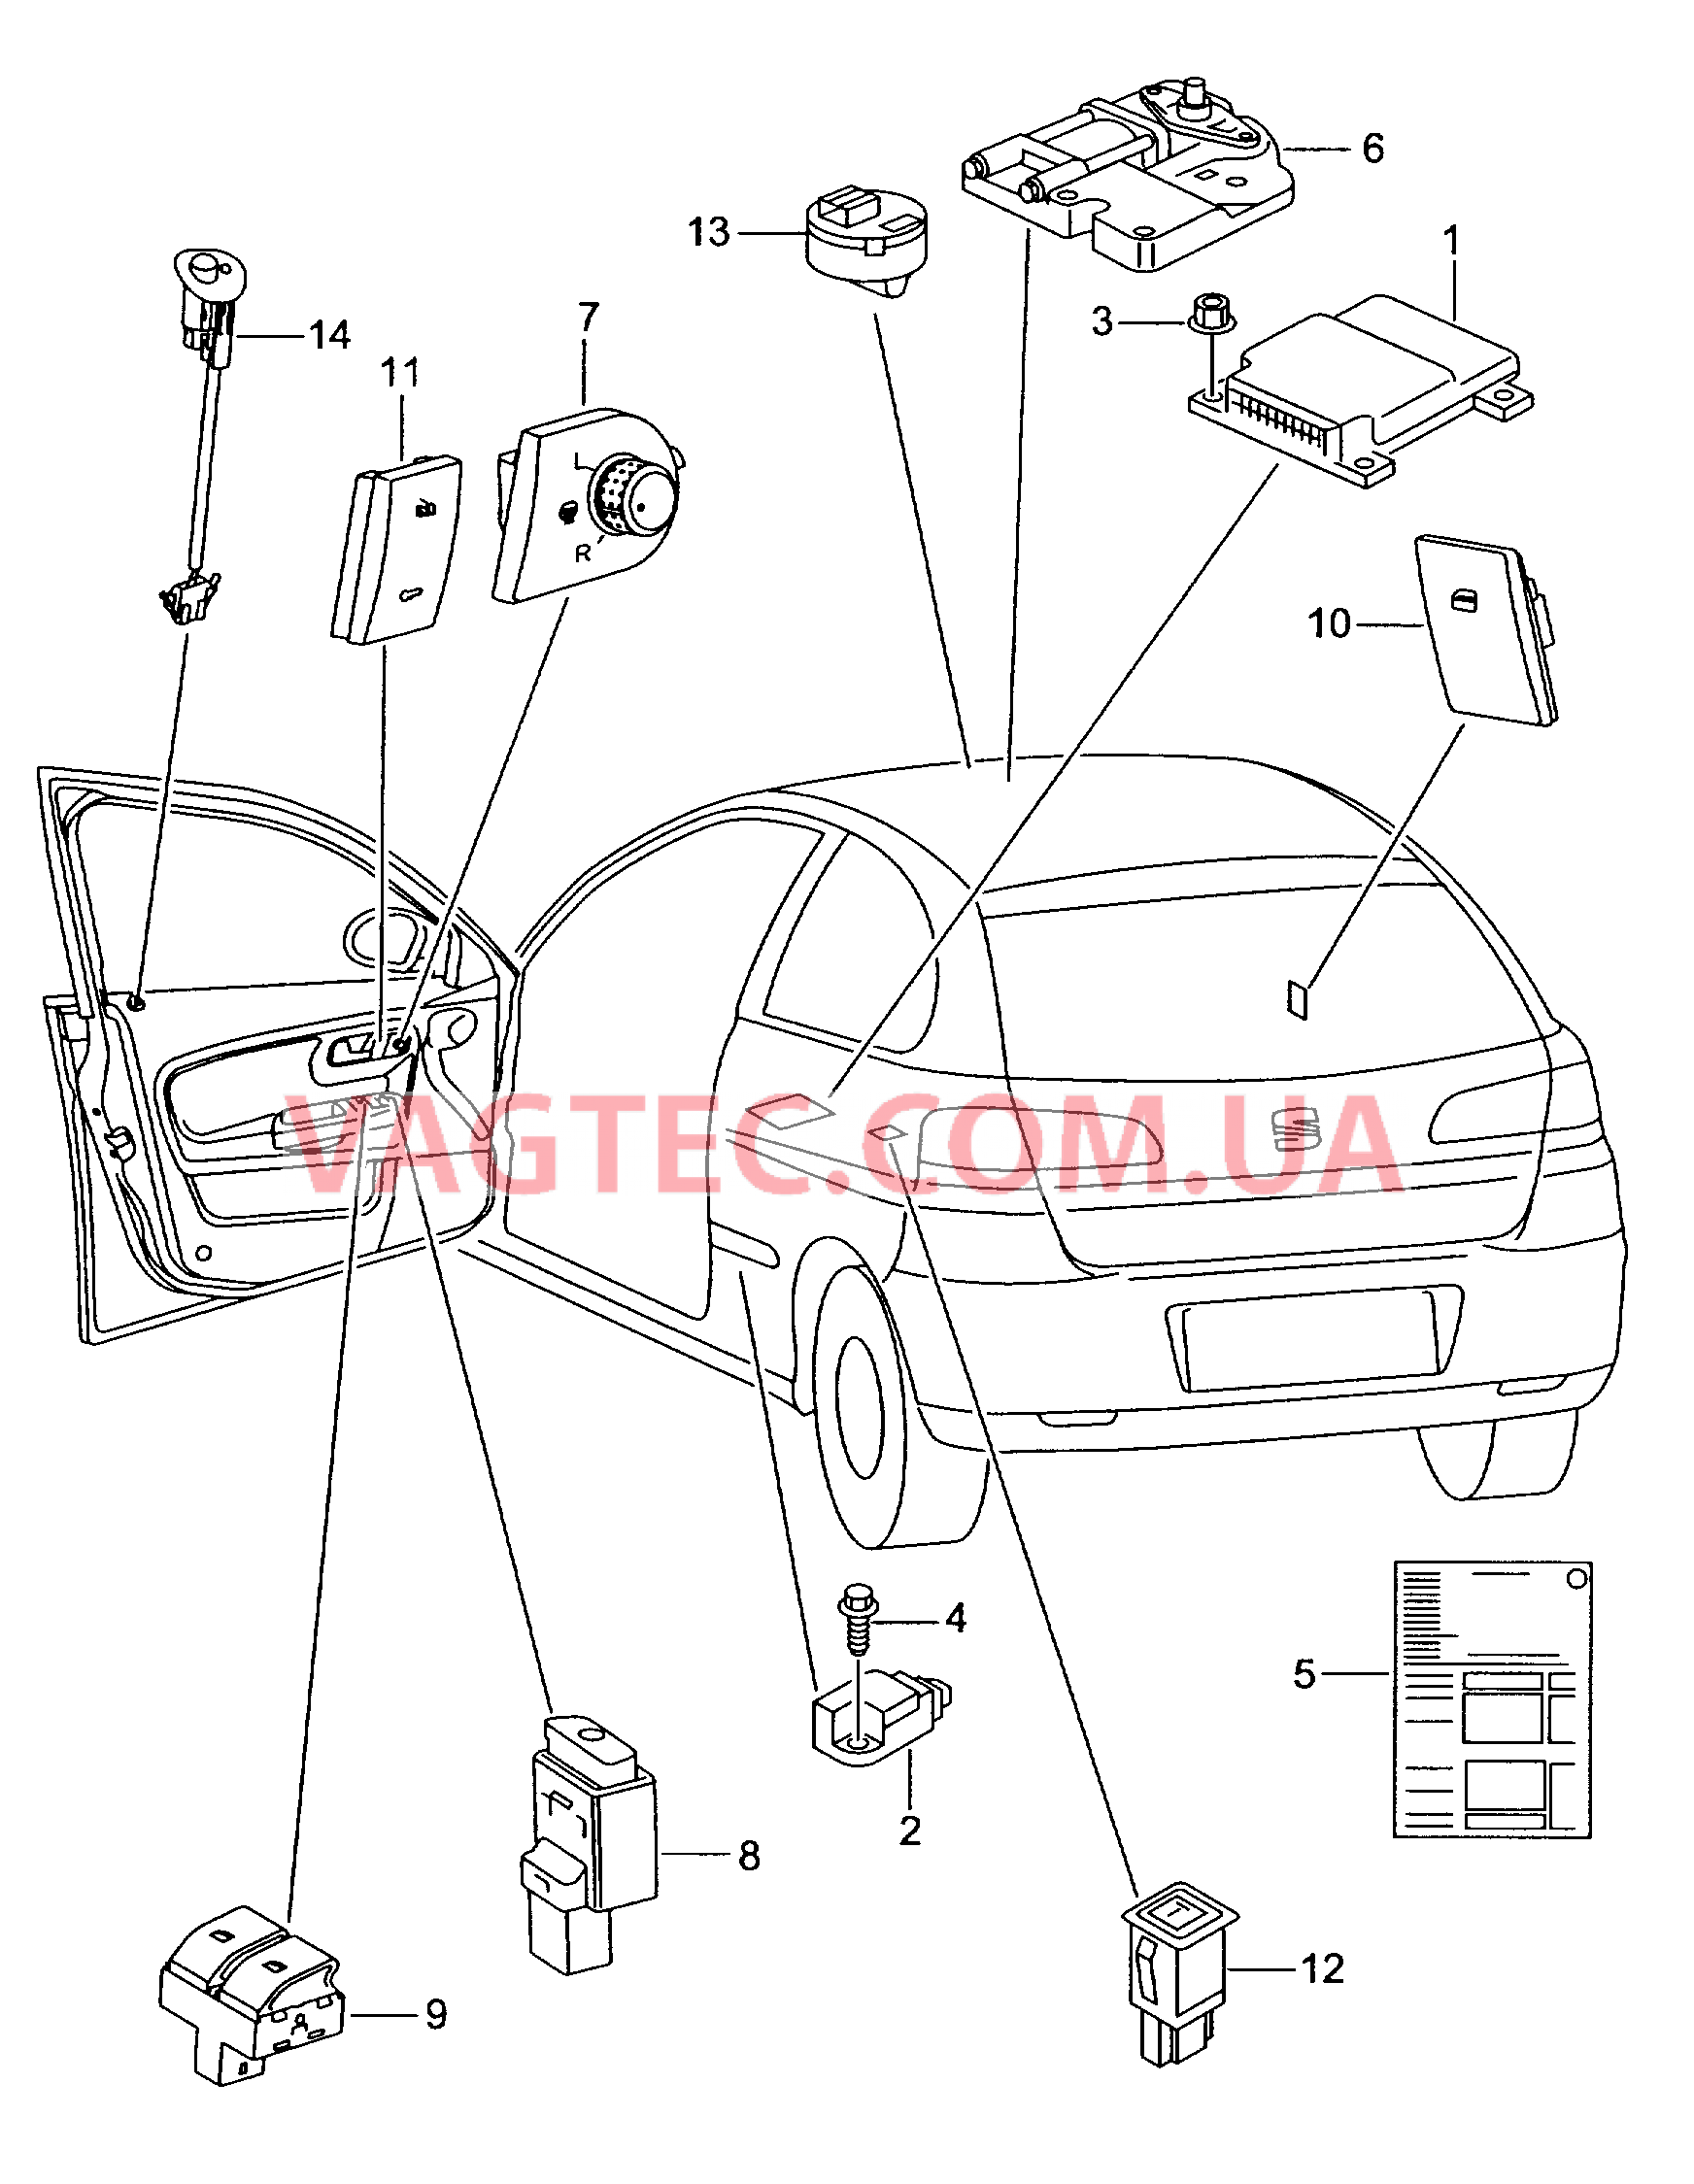 Электродетали для подуш.безоп. Мотор привода люка Выключатель в обивке двери Лампа, контрольная для противоугонной системы  для SEAT Ibiza 2010